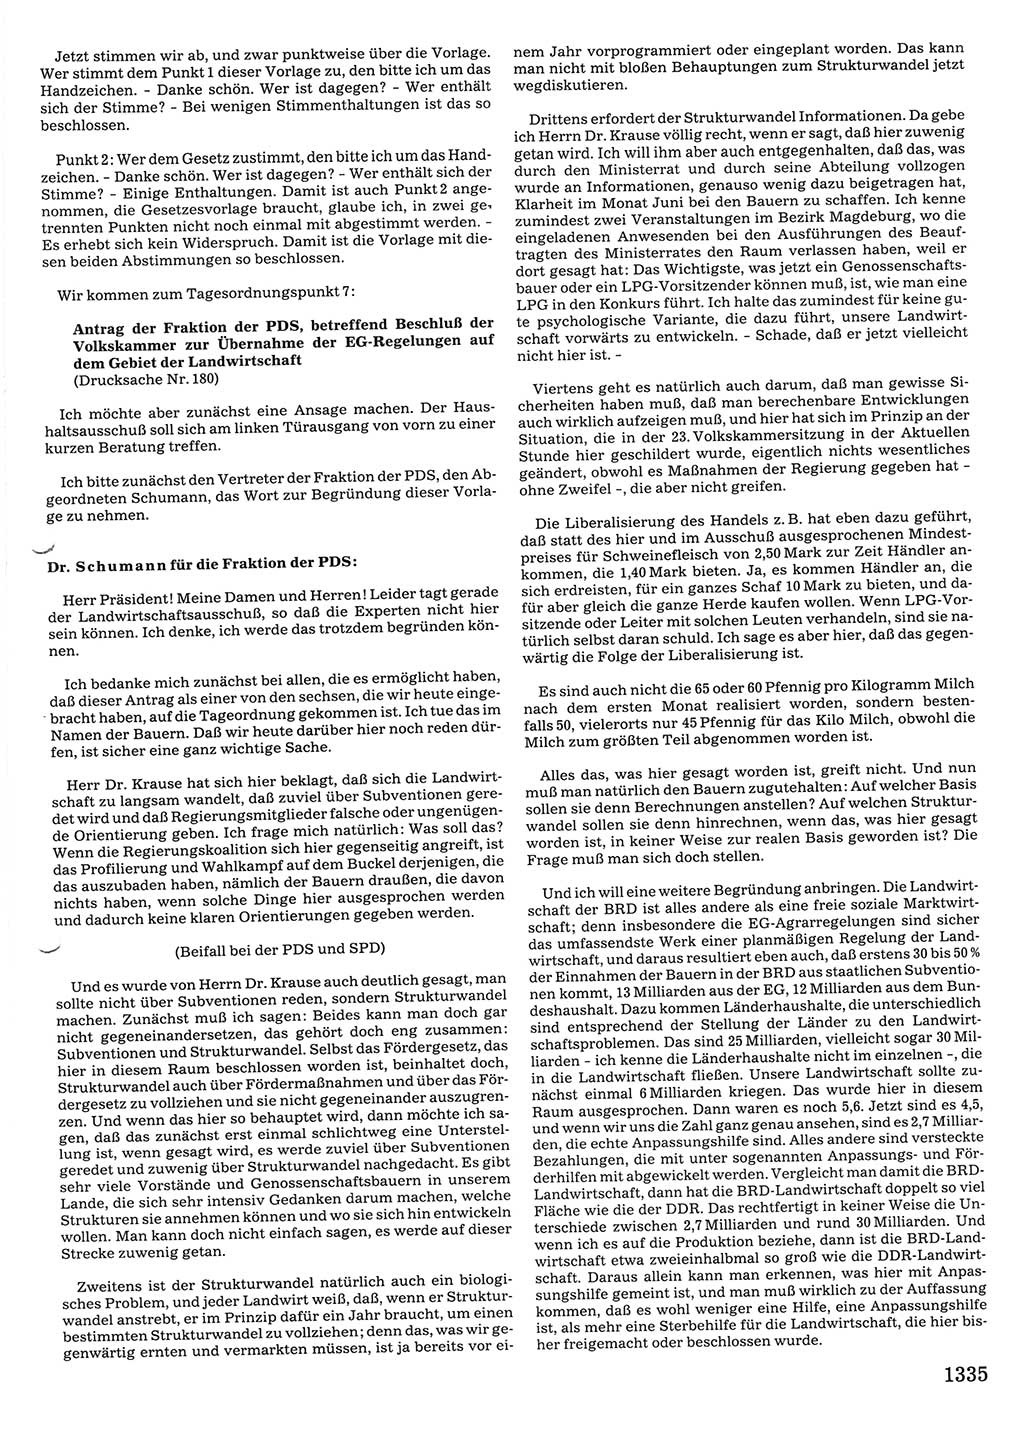 Tagungen der Volkskammer (VK) der Deutschen Demokratischen Republik (DDR), 10. Wahlperiode 1990, Seite 1335 (VK. DDR 10. WP. 1990, Prot. Tg. 1-38, 5.4.-2.10.1990, S. 1335)